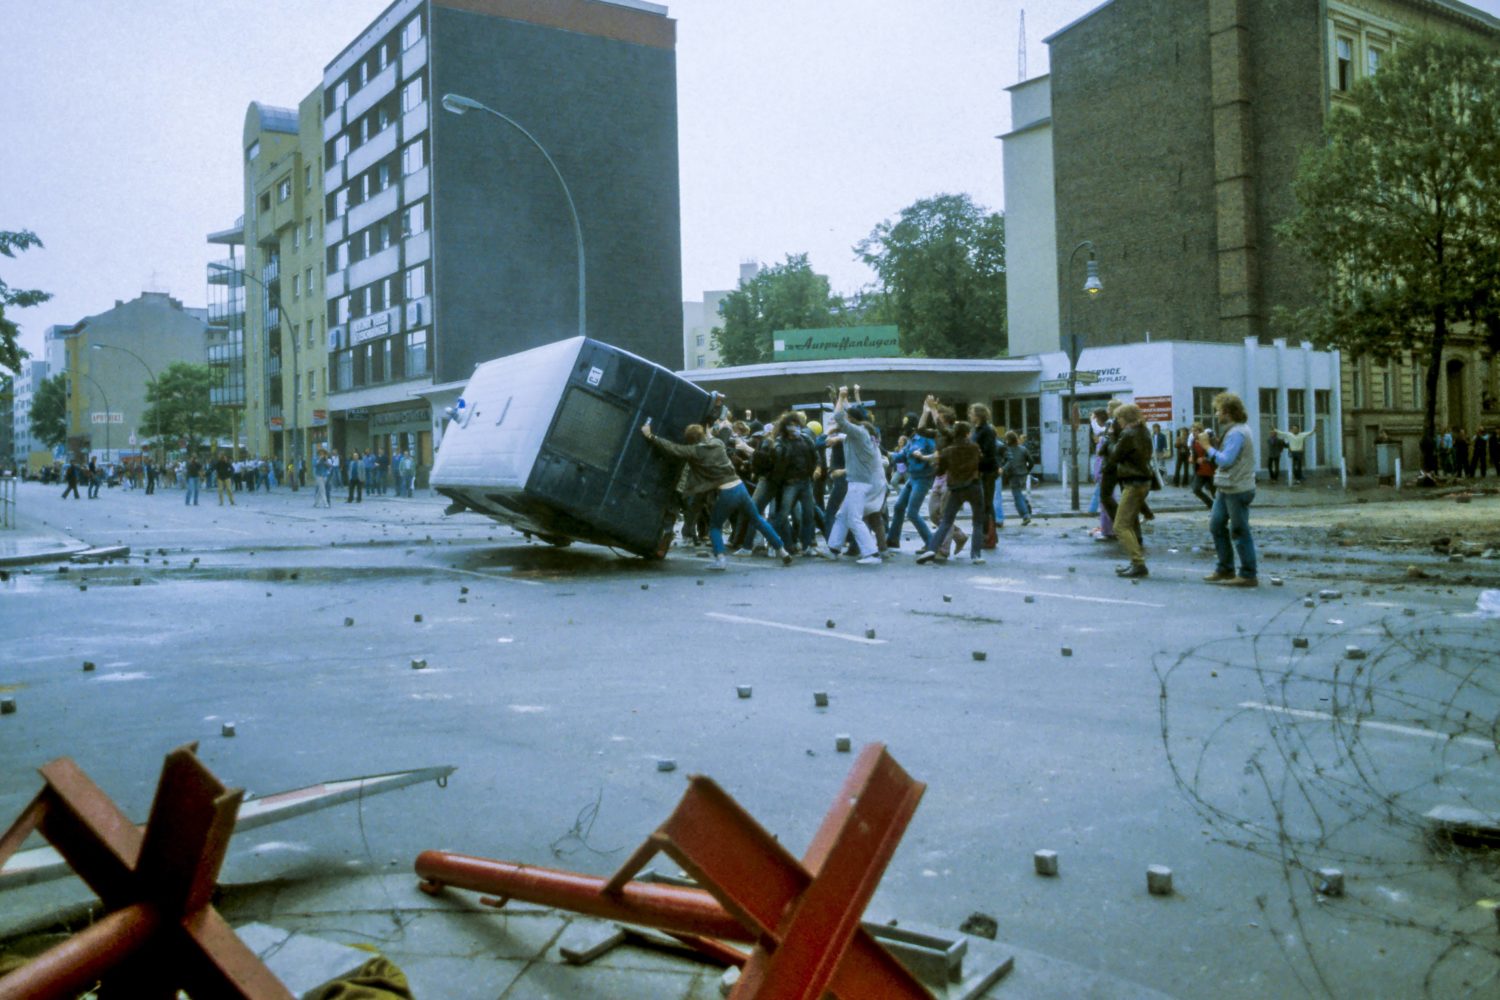 Straßenschlacht in Berlin: Zu Ronald Reagans Besuch war der Nollendorfplatz verwüstet. Foto: Imago Images/Michael Hughes